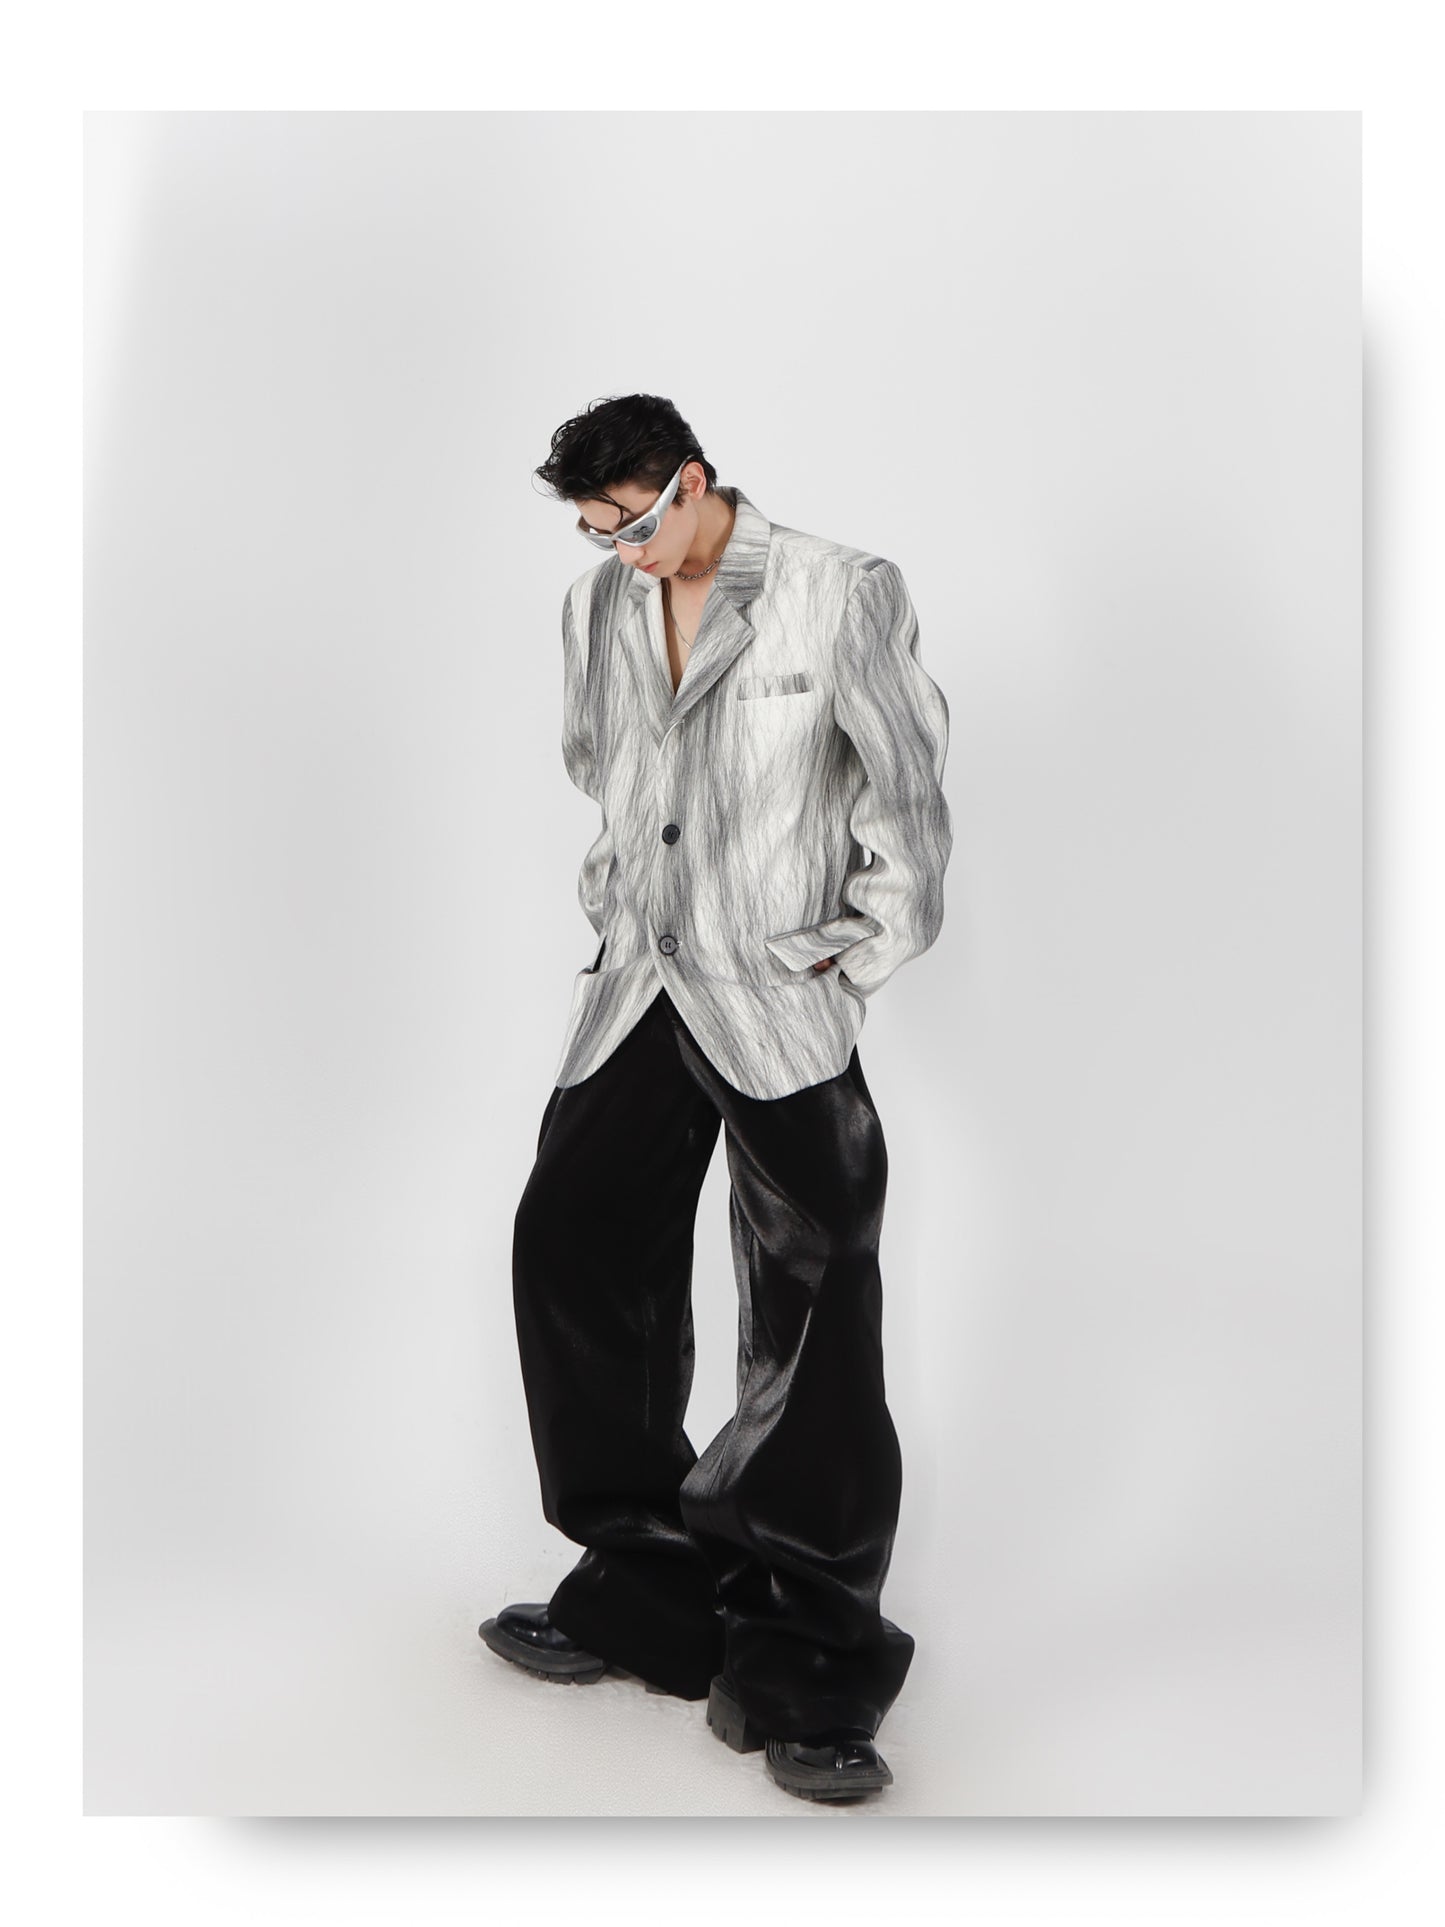 UNISEX Futuristic Patterned Blazer (Suit) | ARGUE CULTURE Collection [H141]